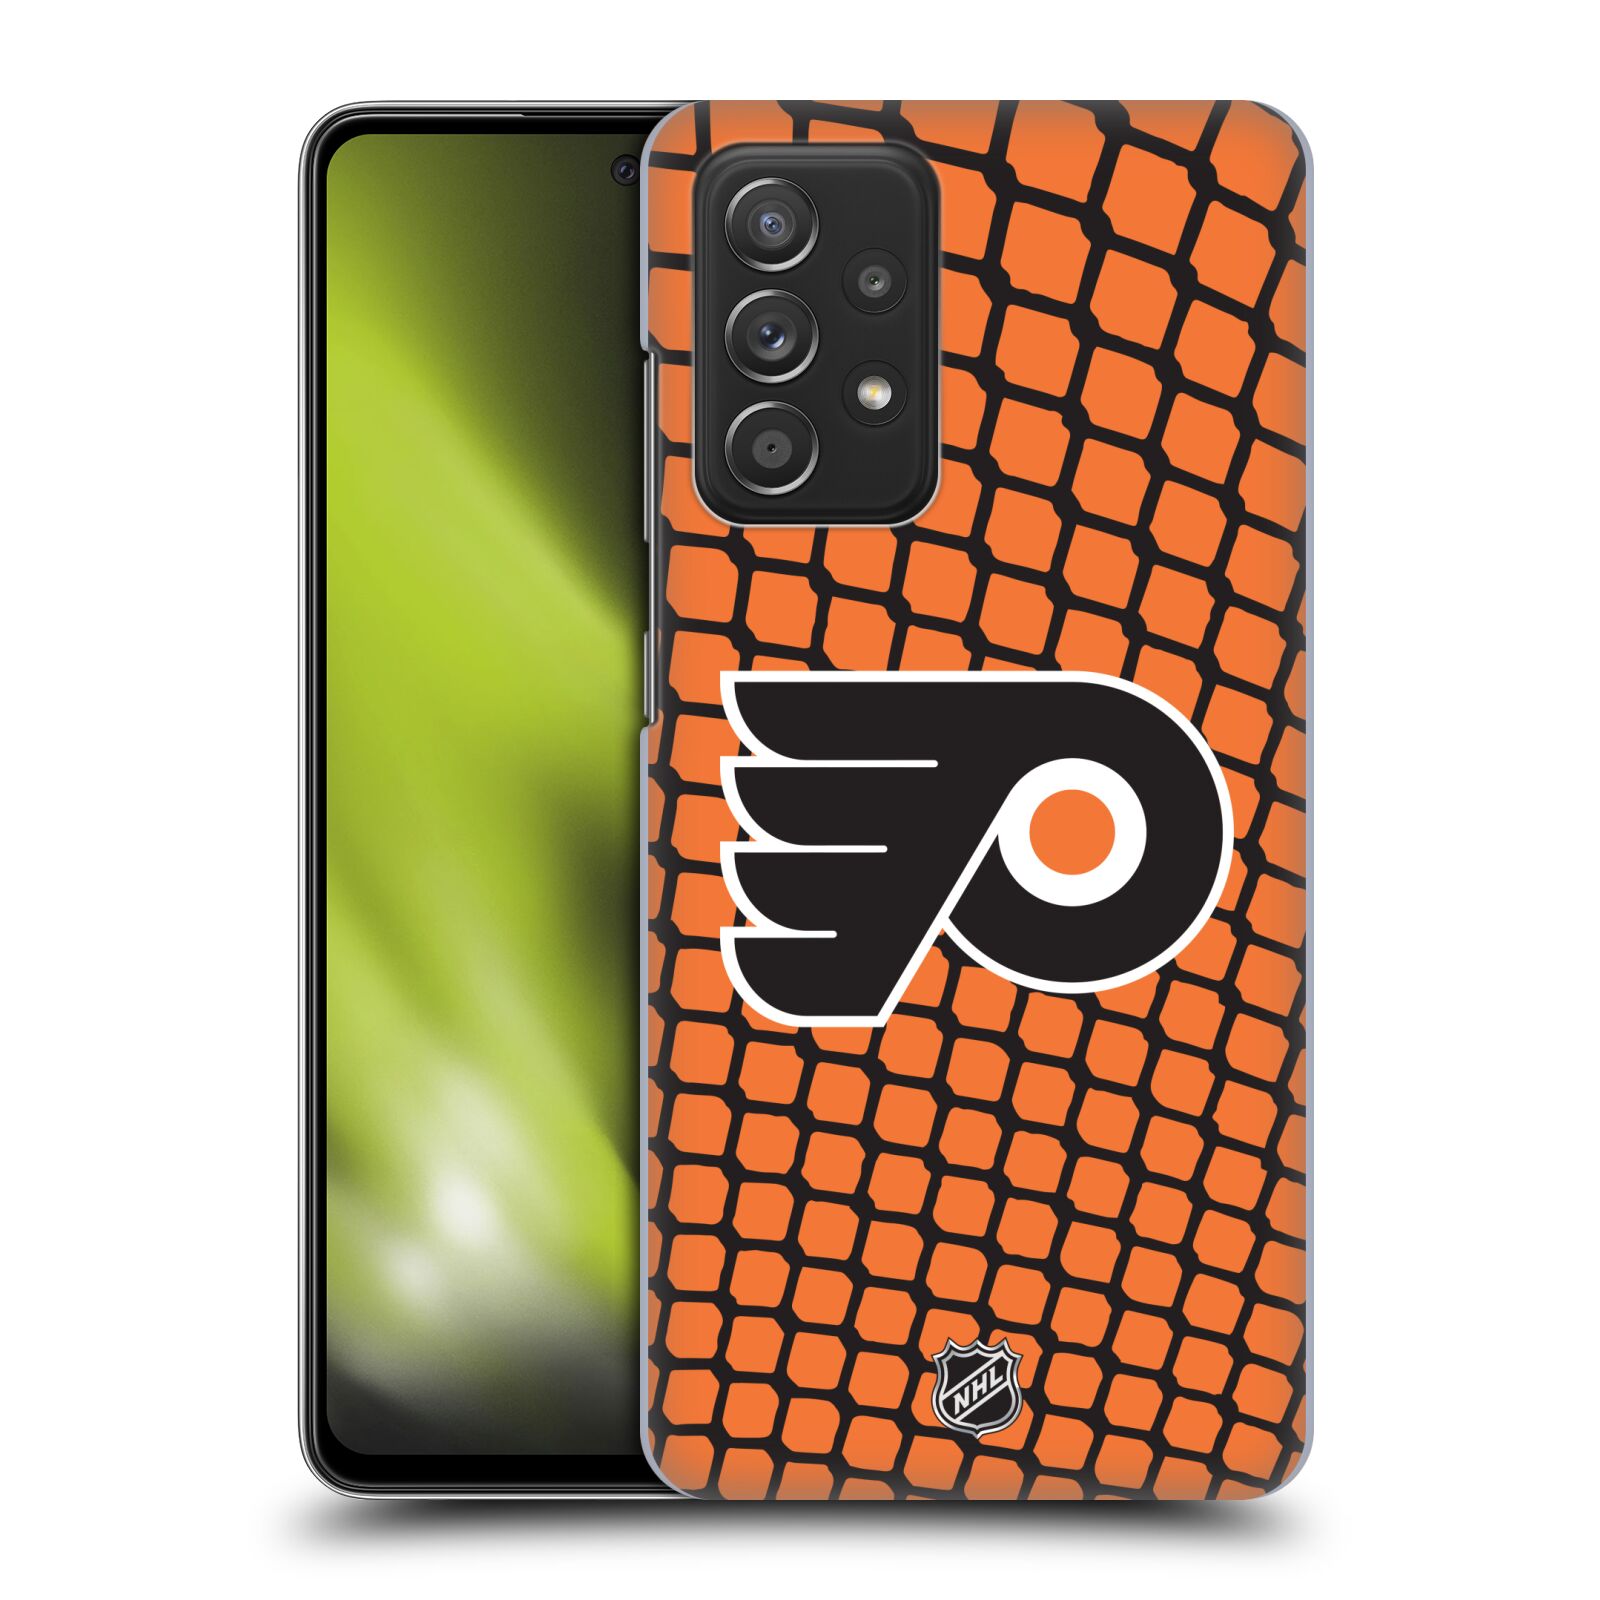 Pouzdro na mobil Samsung Galaxy A52 / A52 5G / A52s 5G - HEAD CASE - Hokej NHL - Philadelphia Flyers - Znak v brance